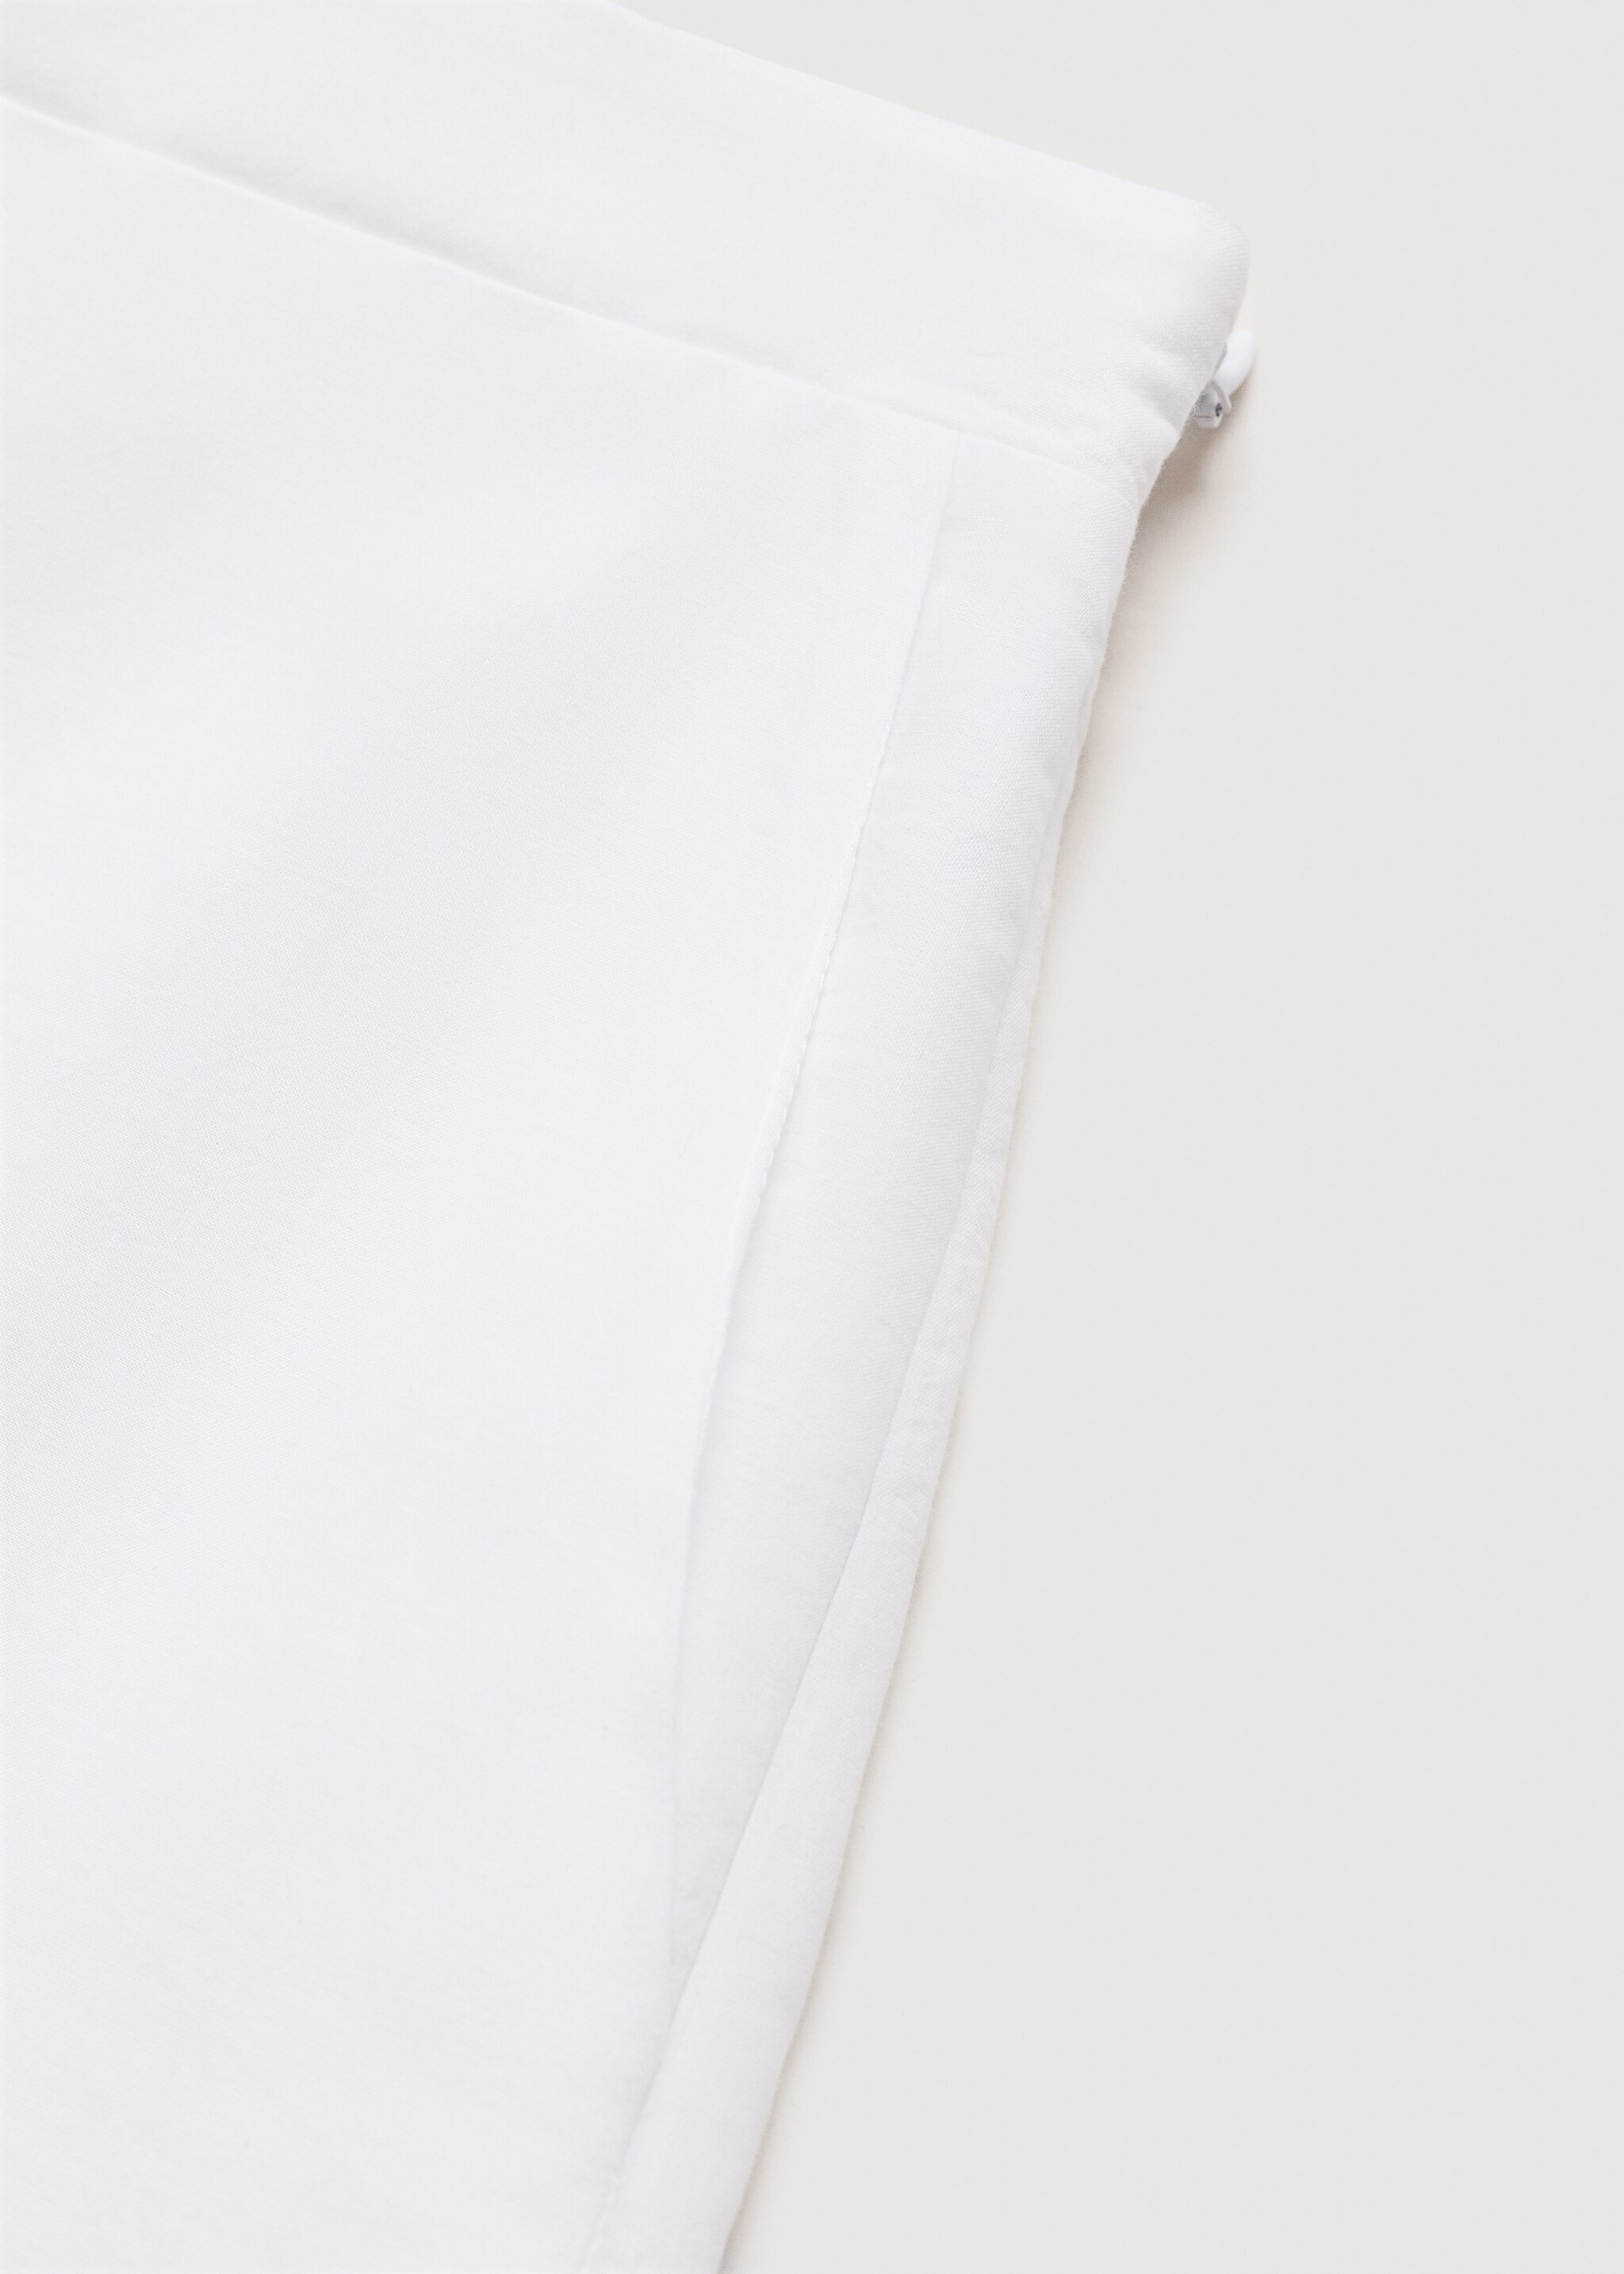 Shorts calados bordados - Detalle del artículo 0